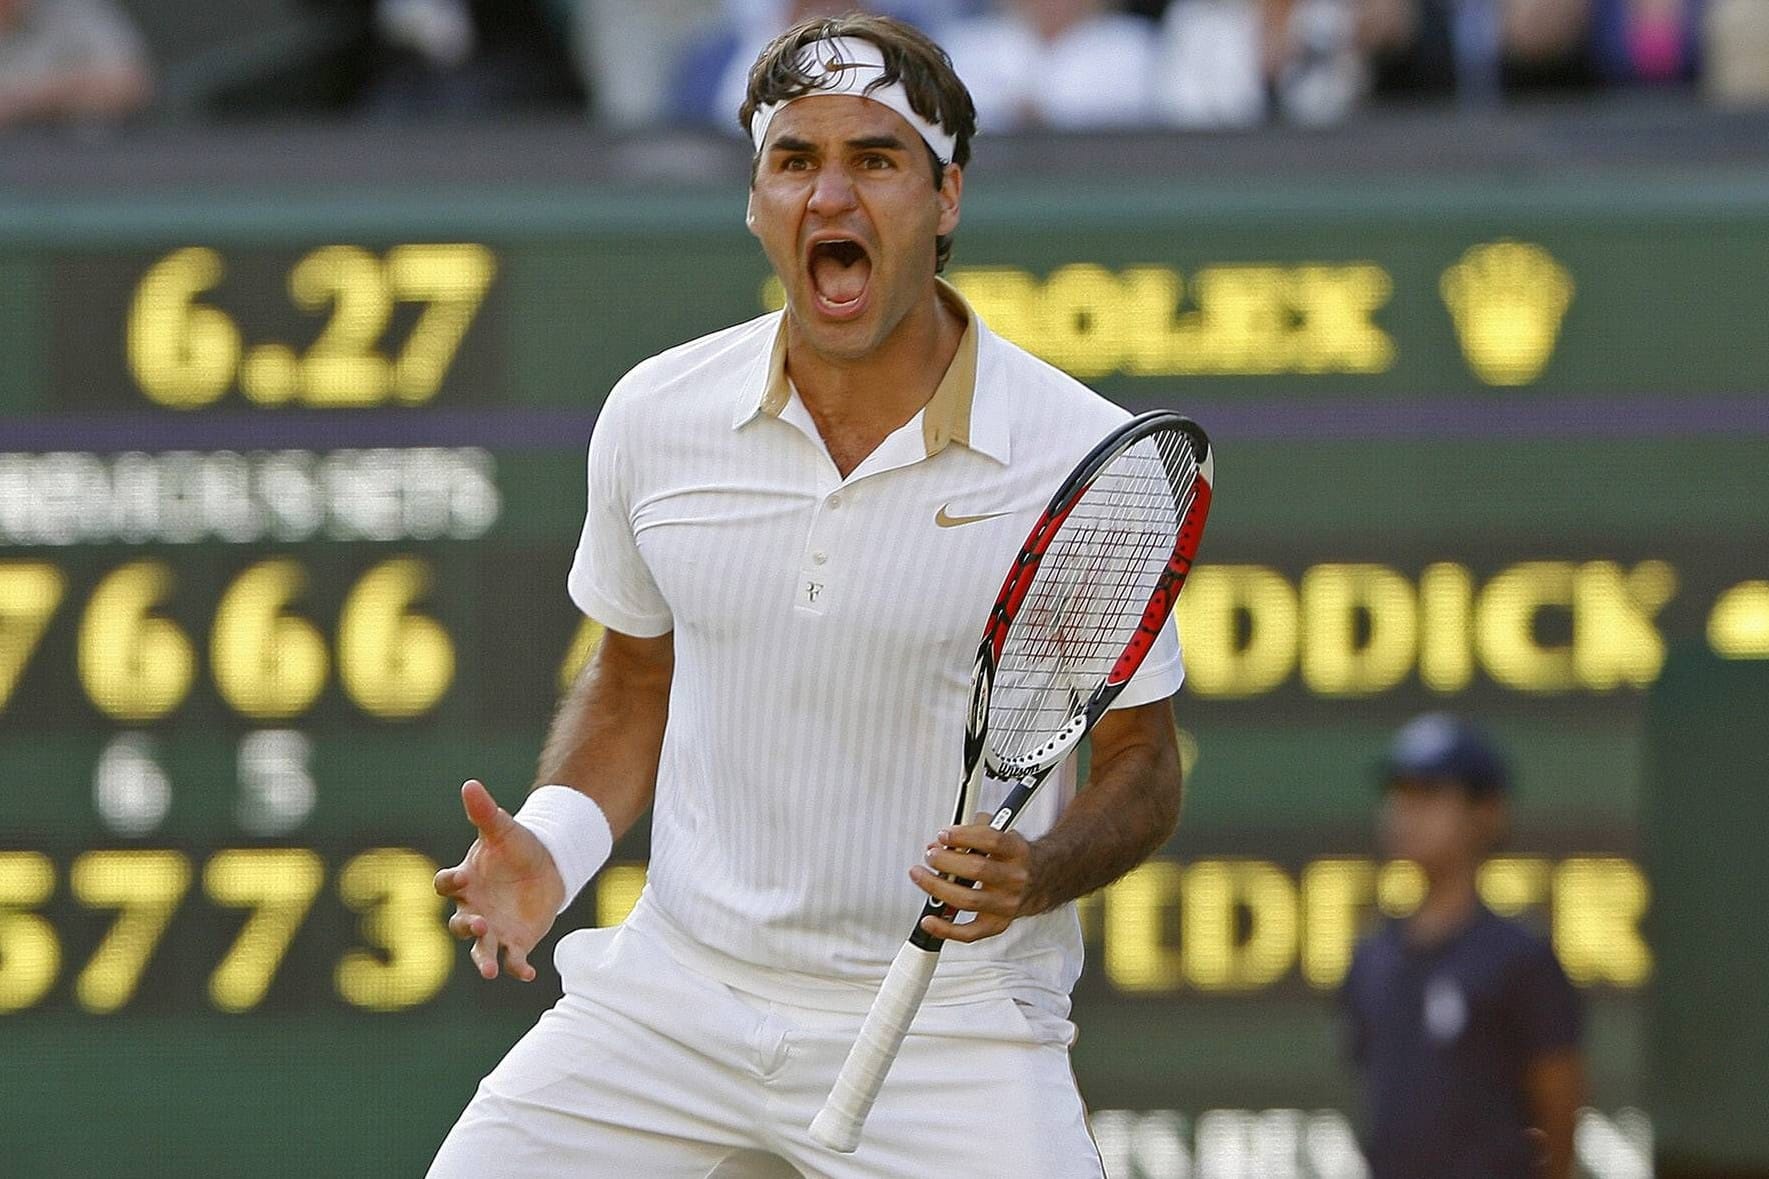 Wimbledon 2009: In einem außergewöhnlich langen Wimbledon-Finale setzt sich Federer im fünften Satz mit 16-14 durch. Mit seinem 15. Grand-Slam-Titel bricht er den Rekord von Pete Sampras.